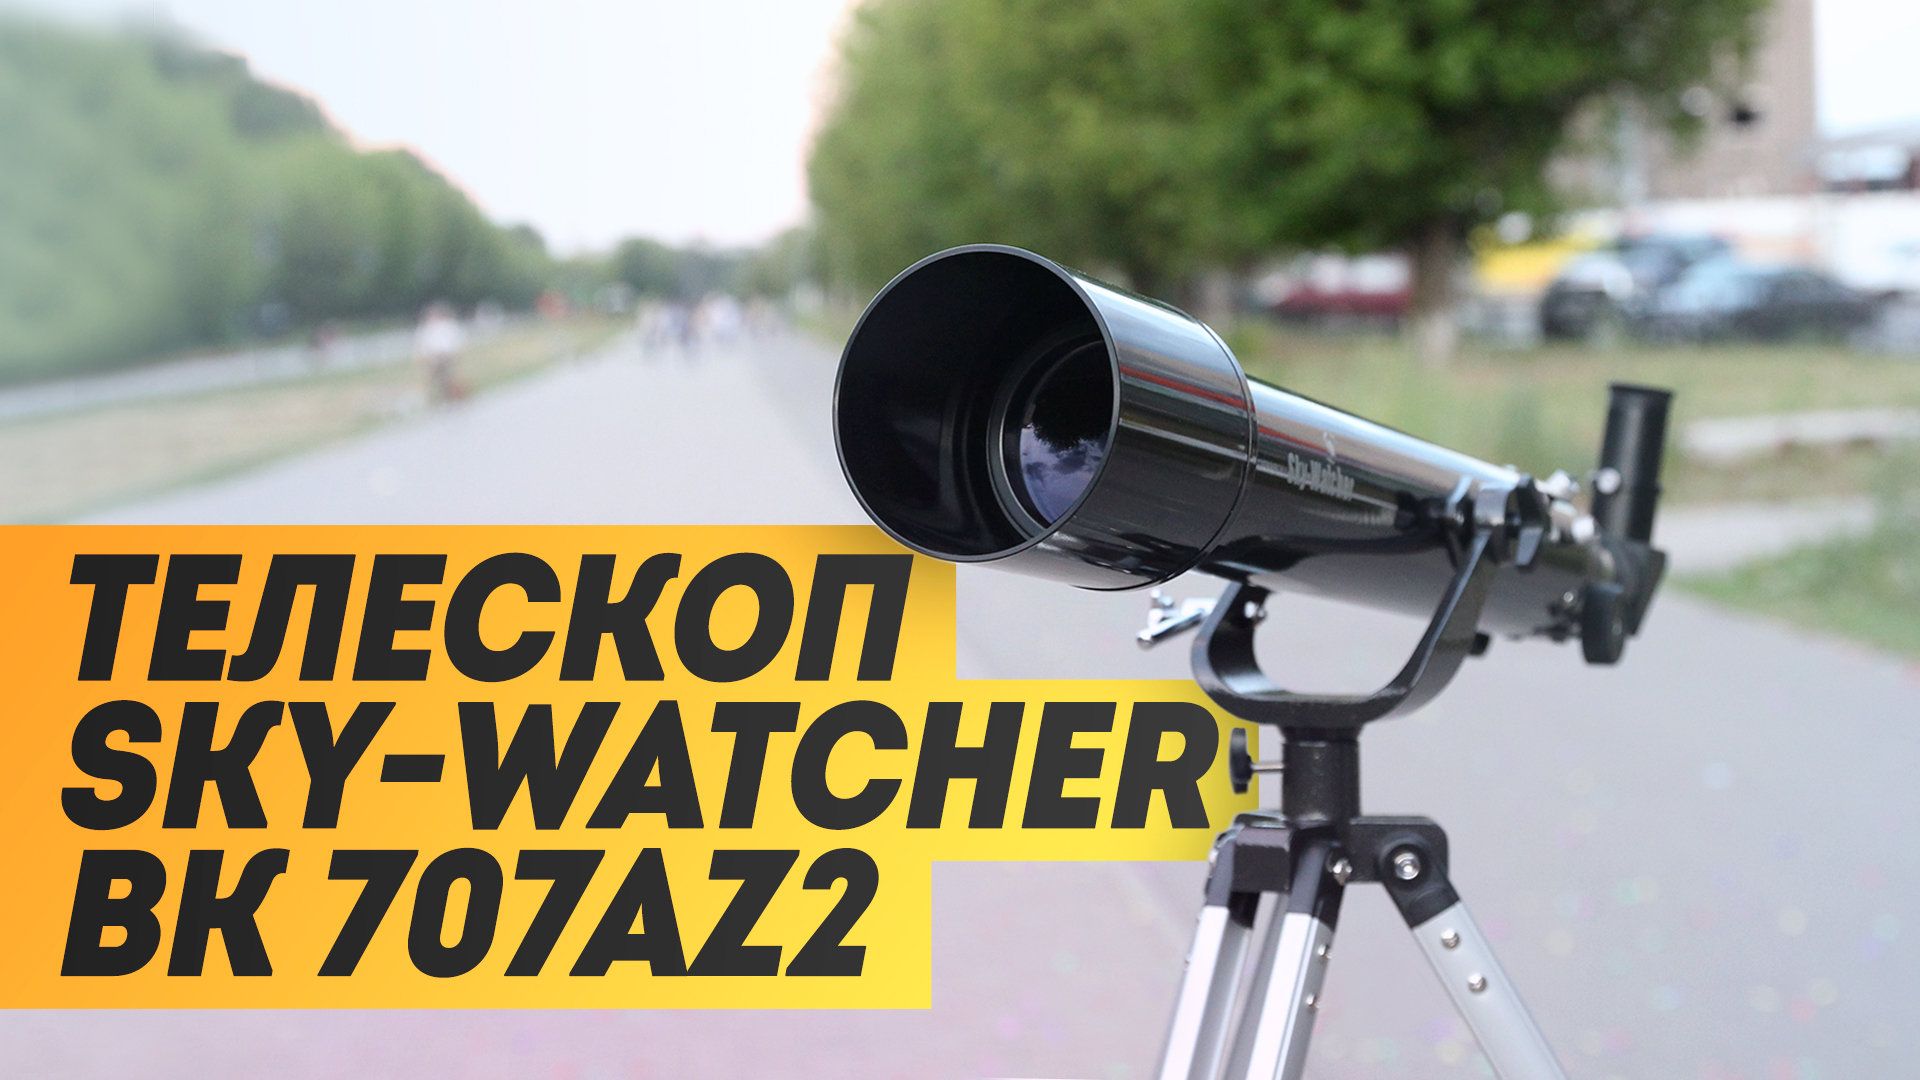 Телескоп Sky-Watcher BK 707AZ2 | Луна и Юпитер через телескоп